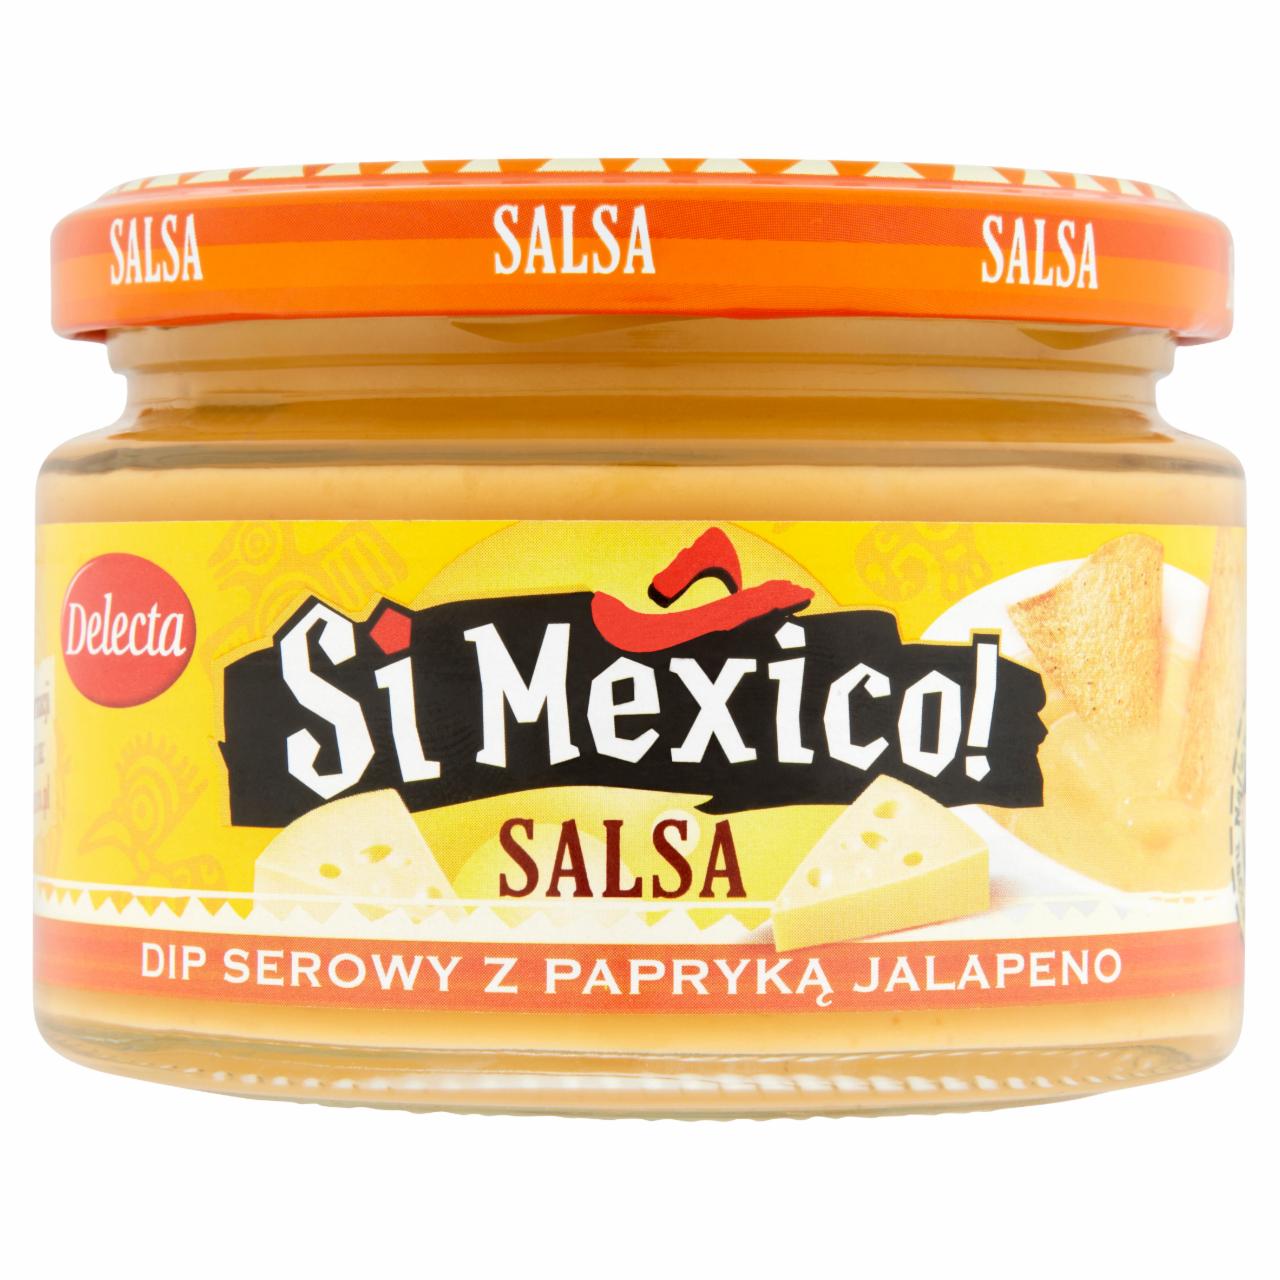 Zdjęcia - Delecta Si Mexico! Salsa Dip serowy z papryką jalapeno 250 g